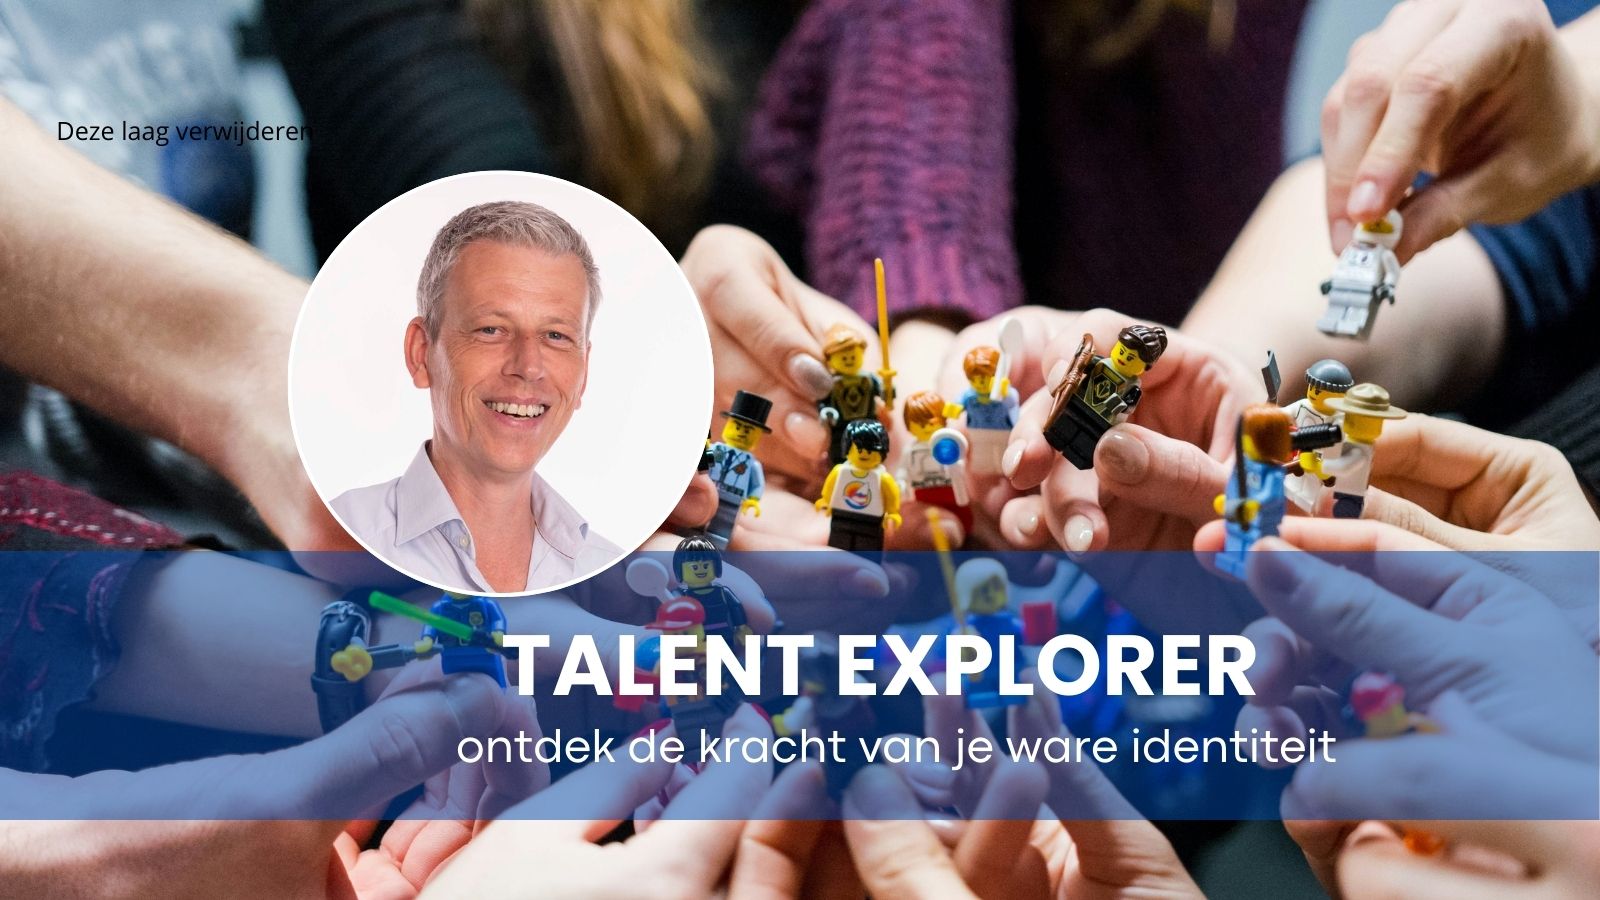 Personeelsuitje Nijmegen: Talent explorer